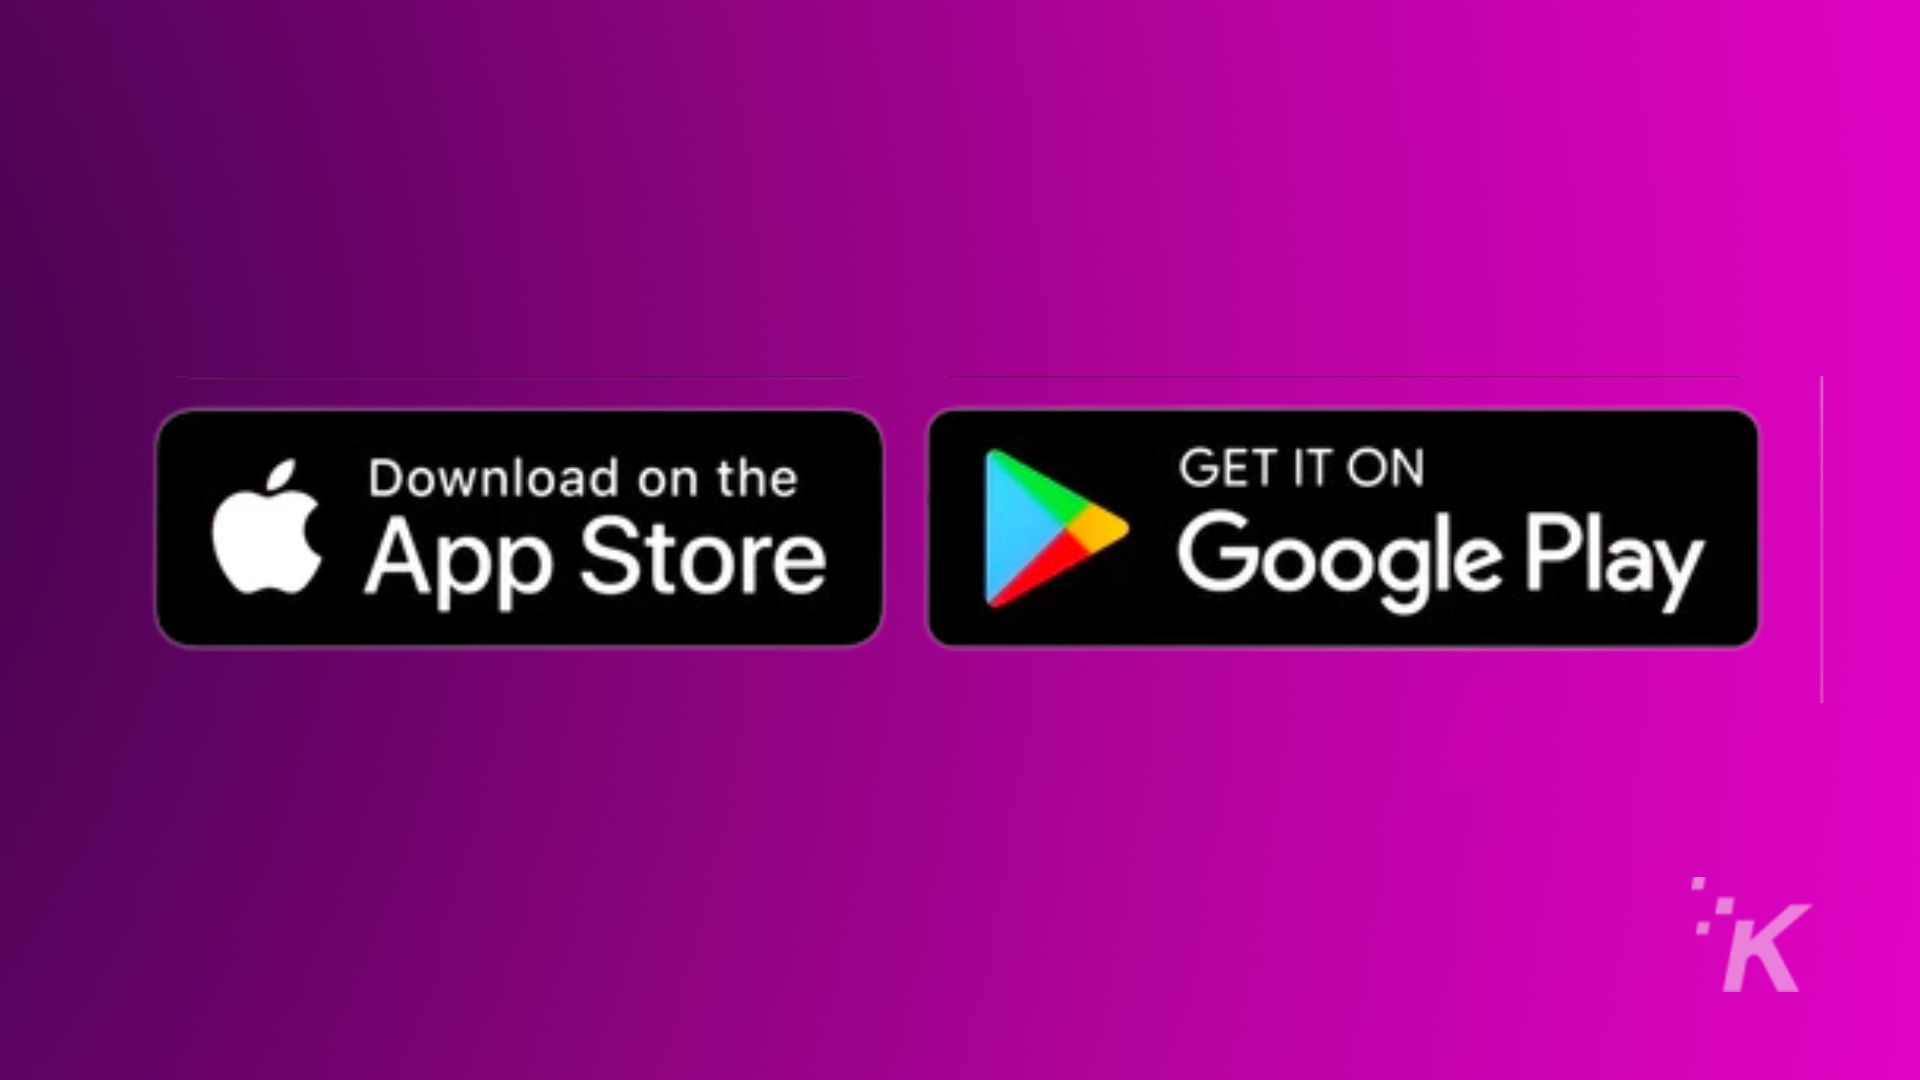 この画像は、App Store および Google Play での製品の入手可能性を宣伝しています。全文: GET IT ON App Store Google Play IK からダウンロード